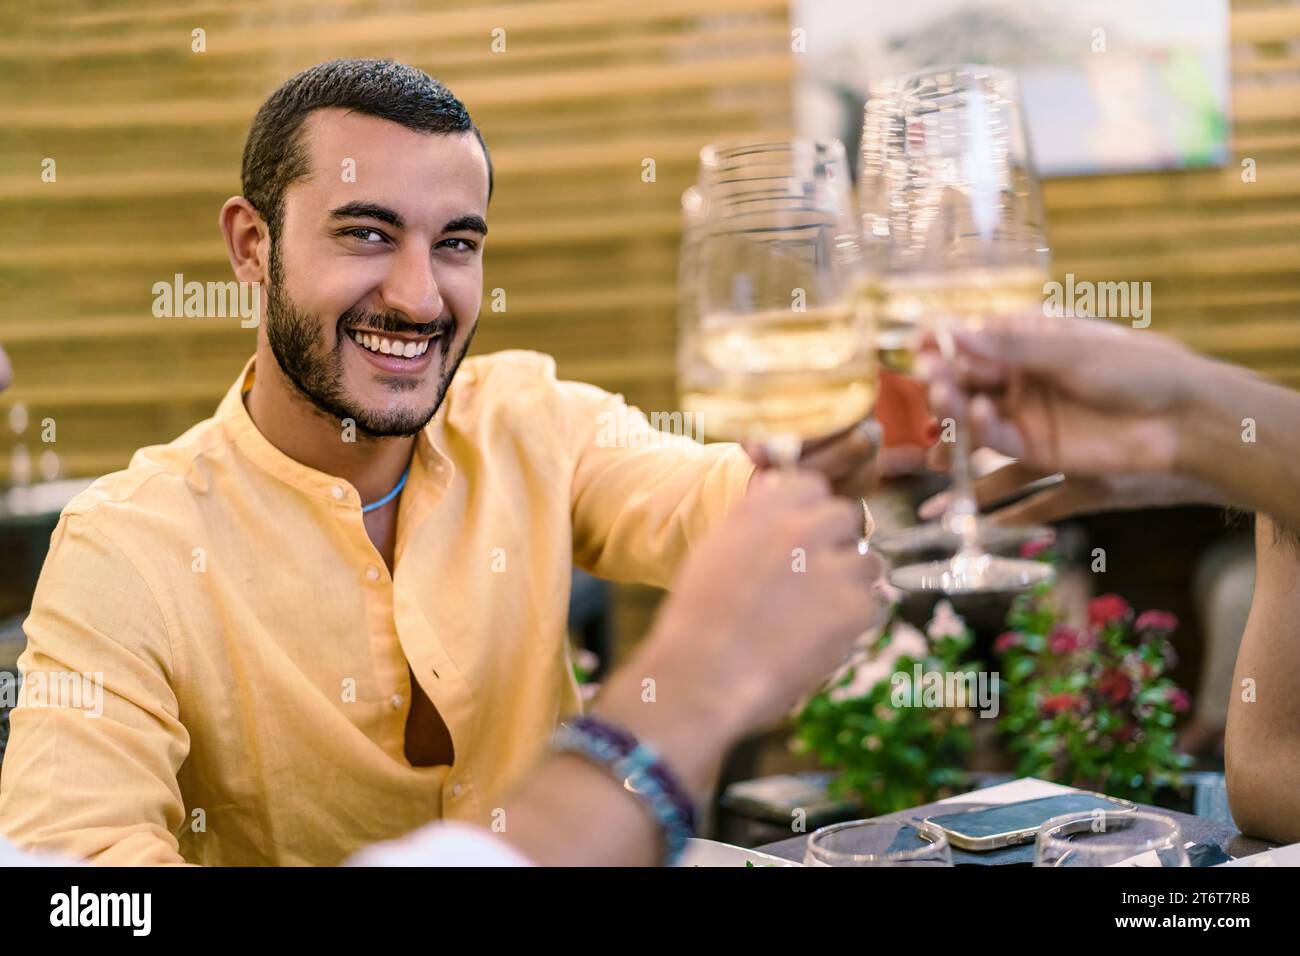 Un homme souriant dans une chemise jaune grillant avec du vin blanc, profitant d'un moment convivial avec des amis - agréable dégustation de vin, toast amical avec Banque D'Images